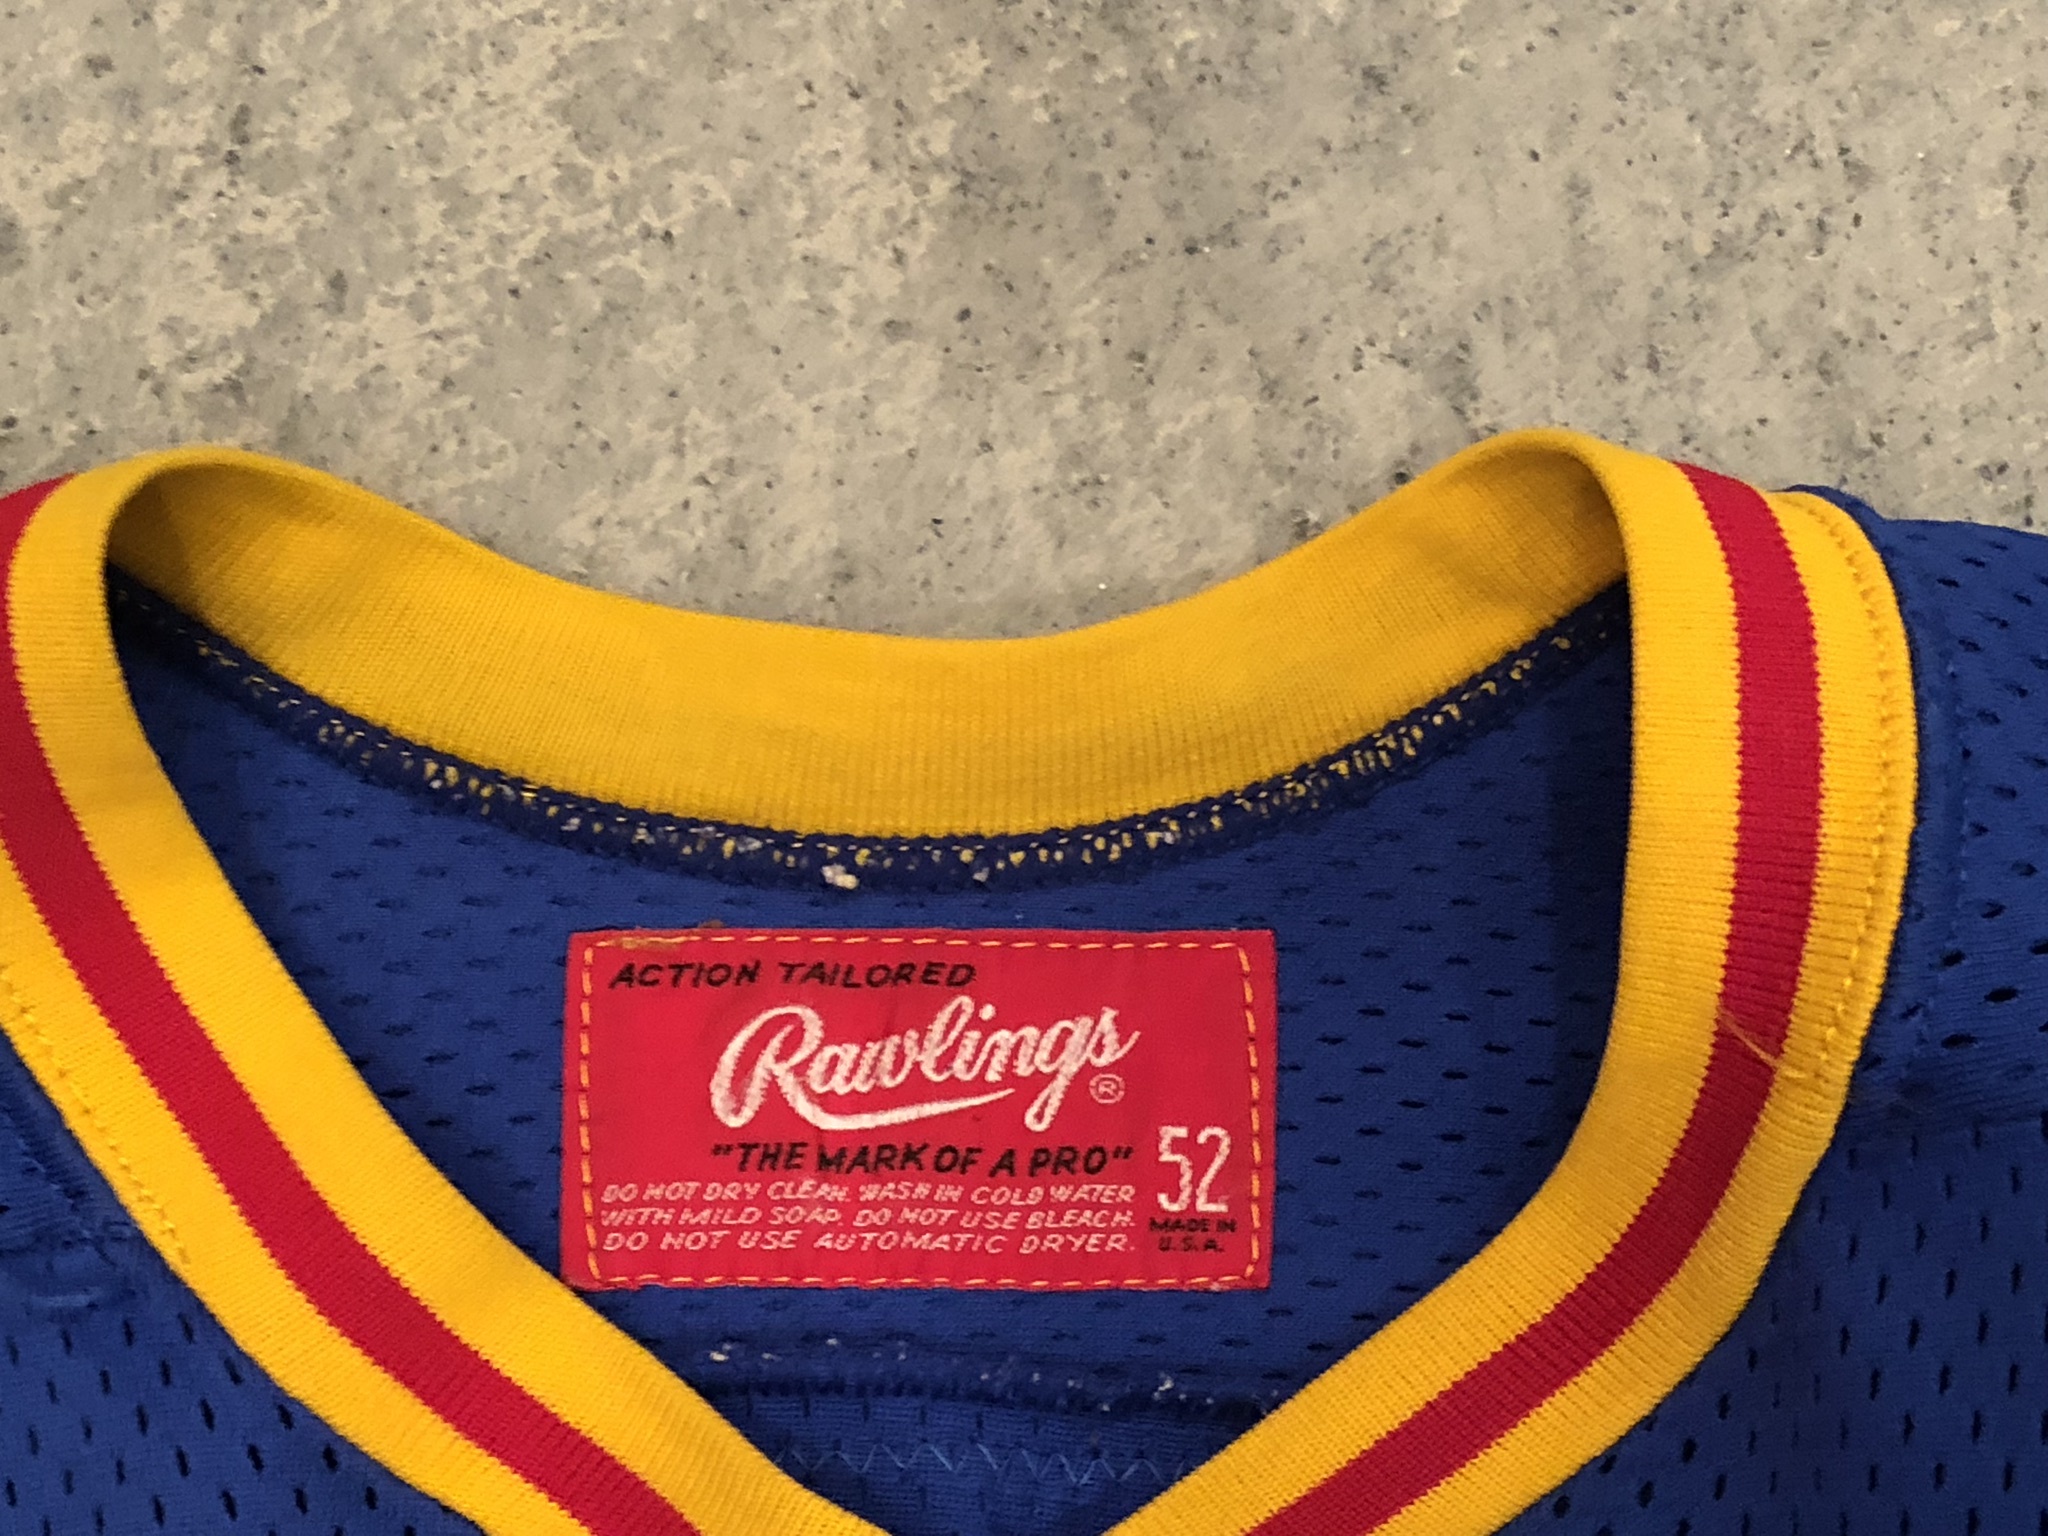 Colorado Rockies Chico Resch Vintage Hockey T-shirt With -  Norway